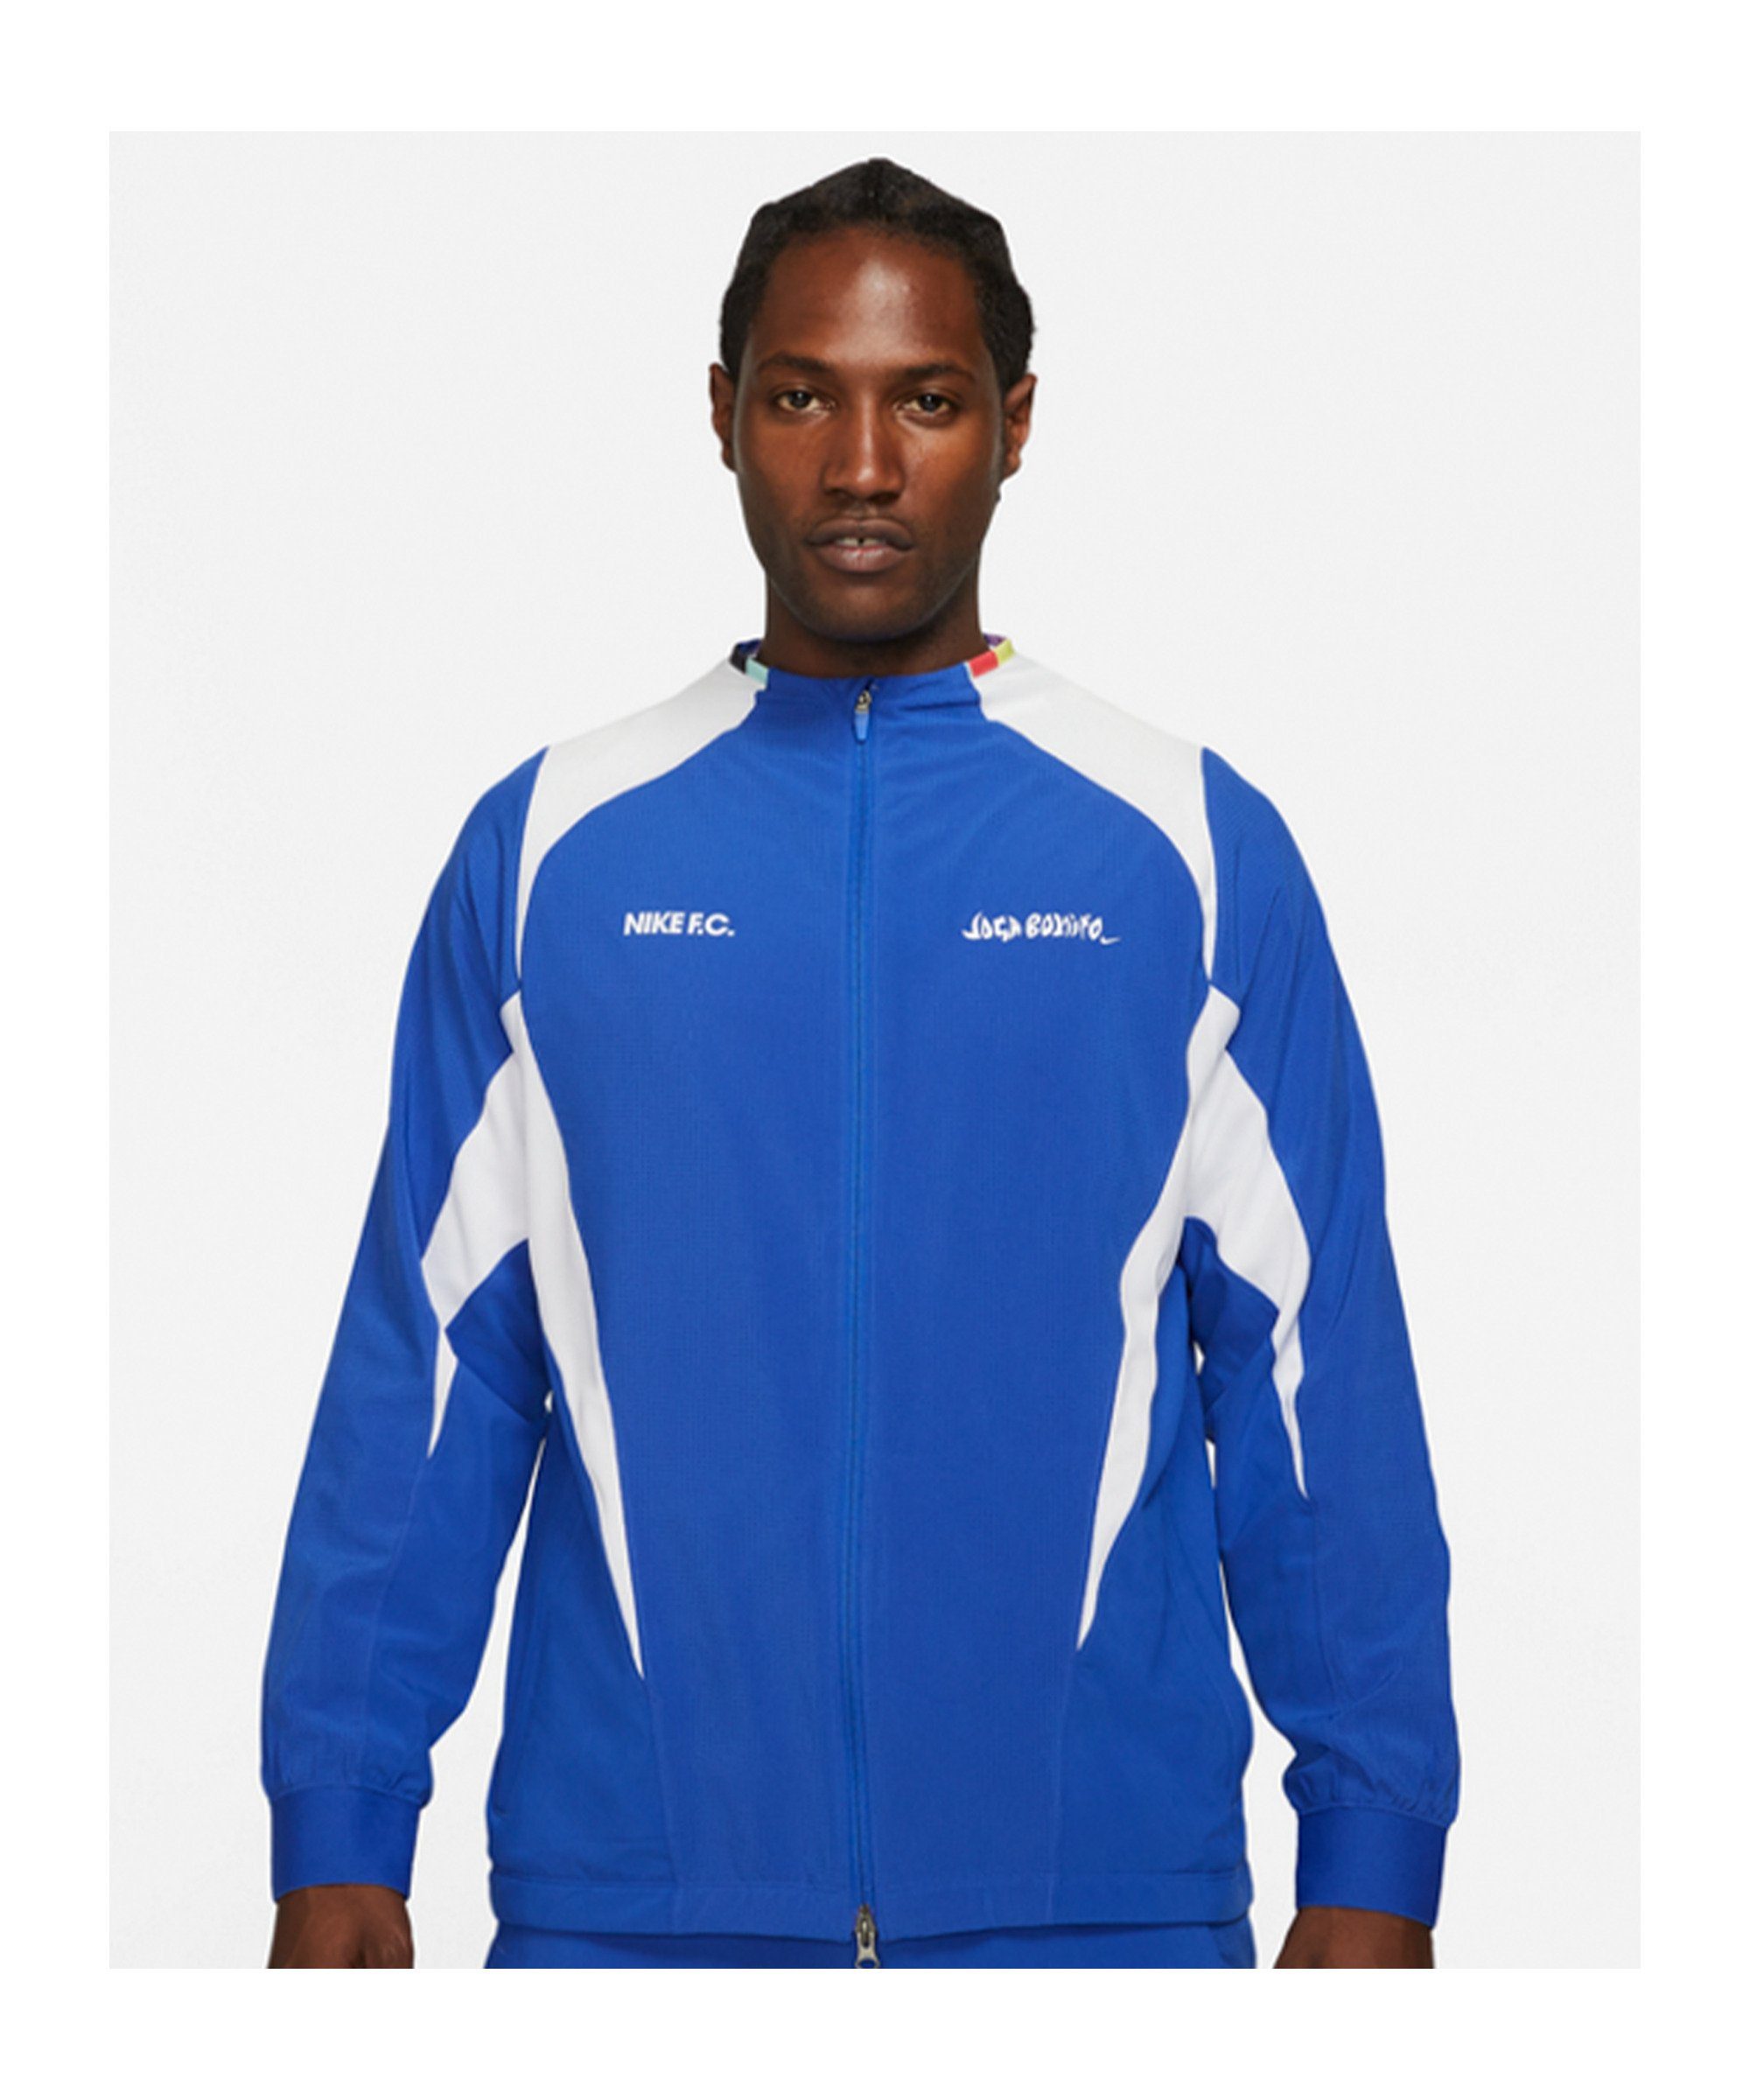 Nike Sportswear Sweatjacke F.C. Joga Bonito Woven Jacke blauweiss